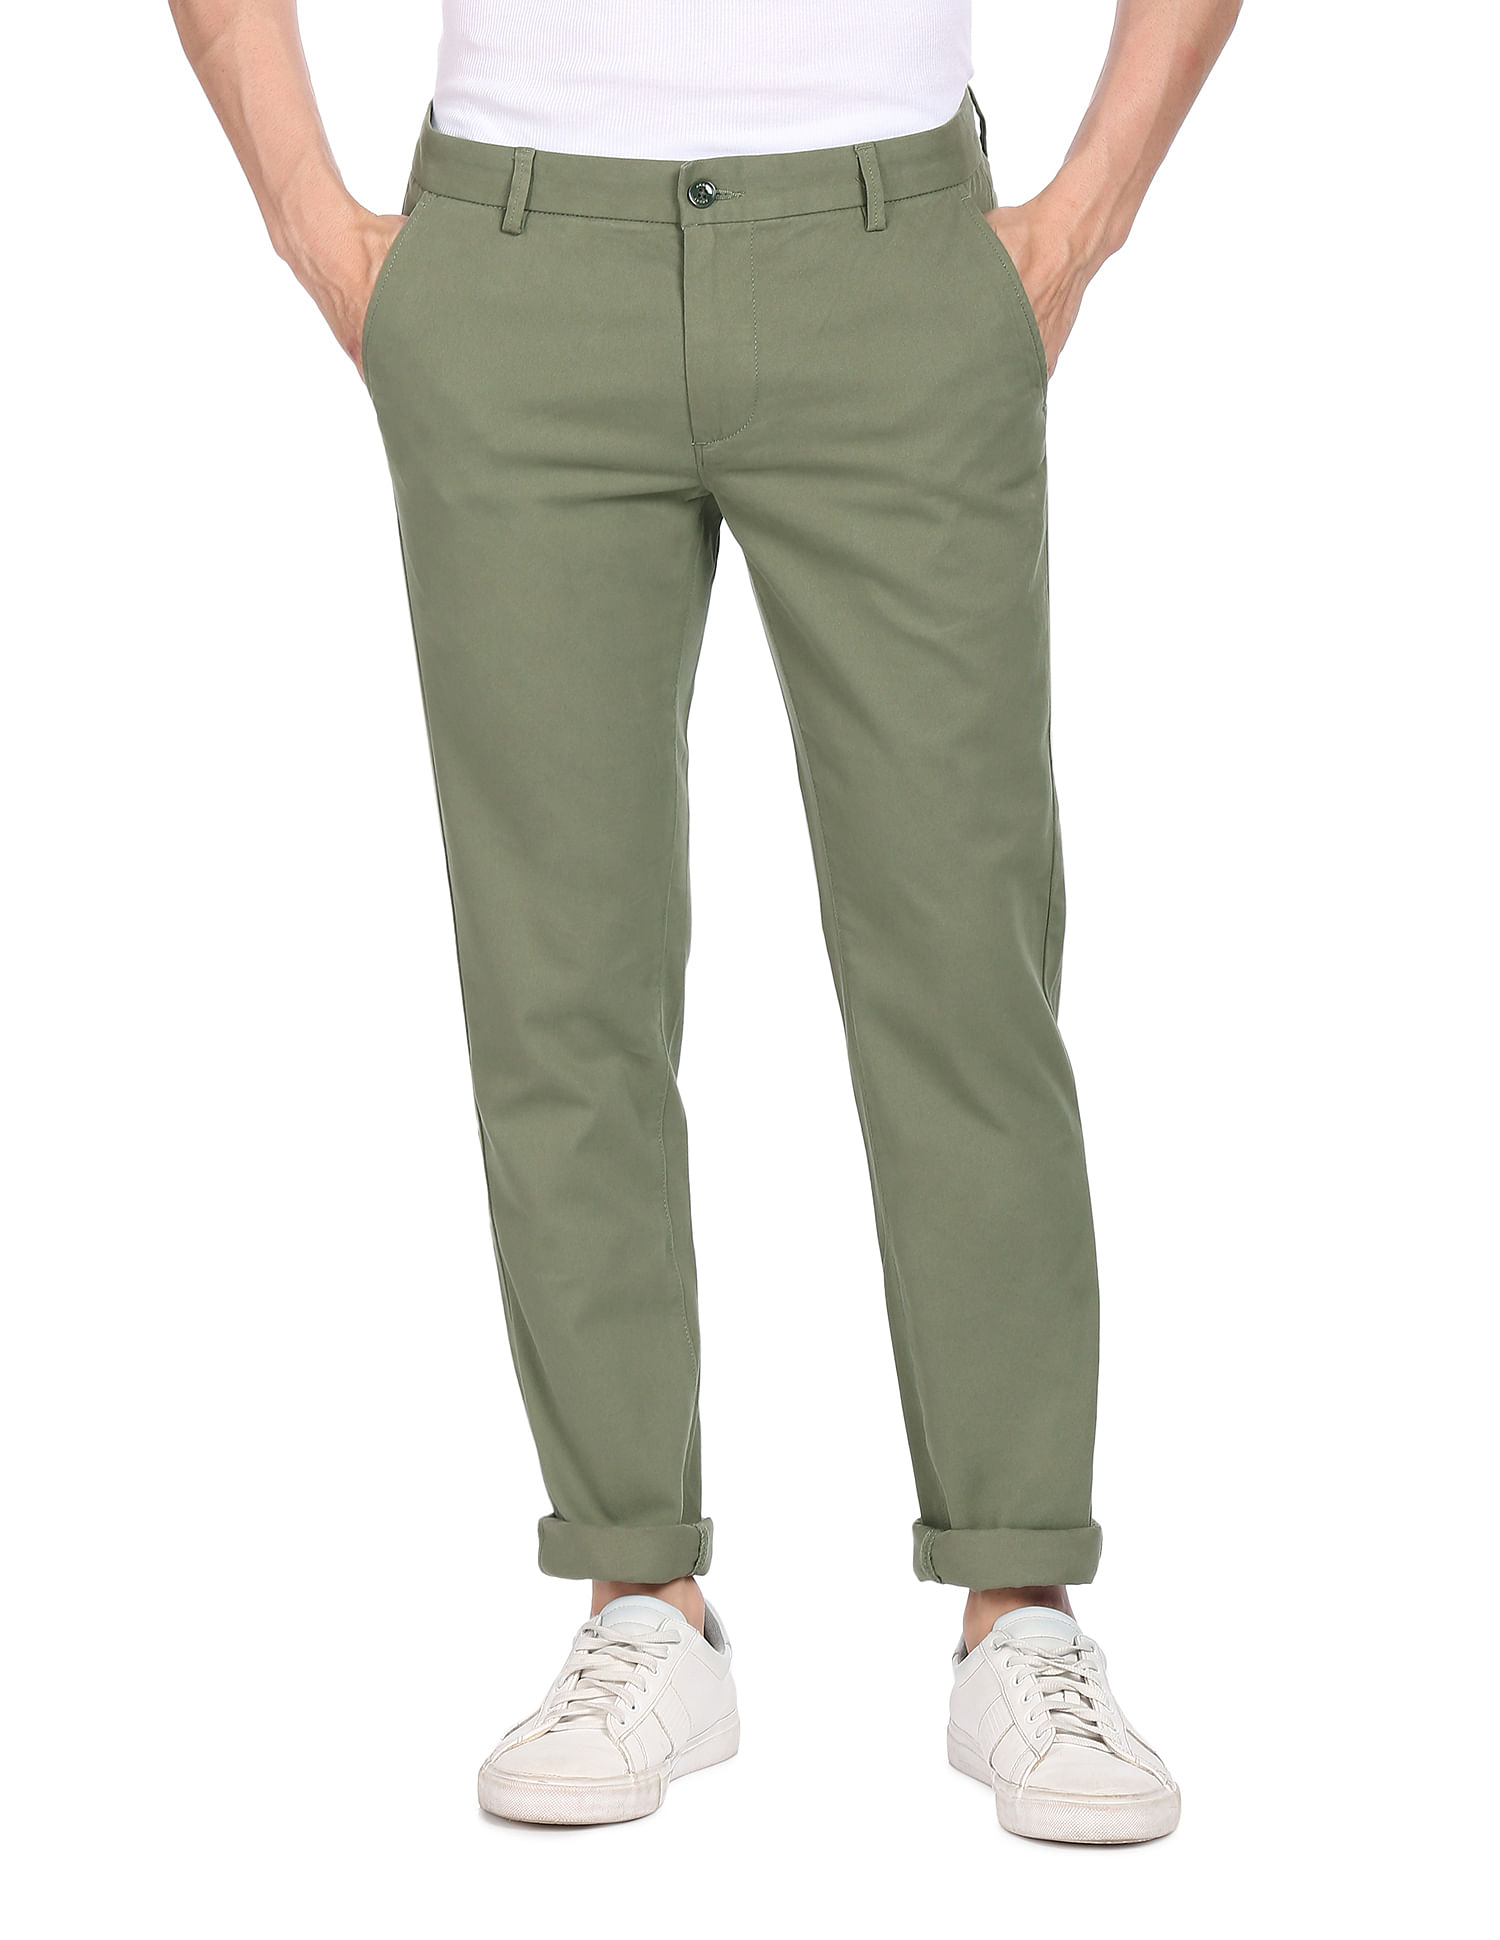 Light Green Trousers  Buy Light Green Trousers online in India